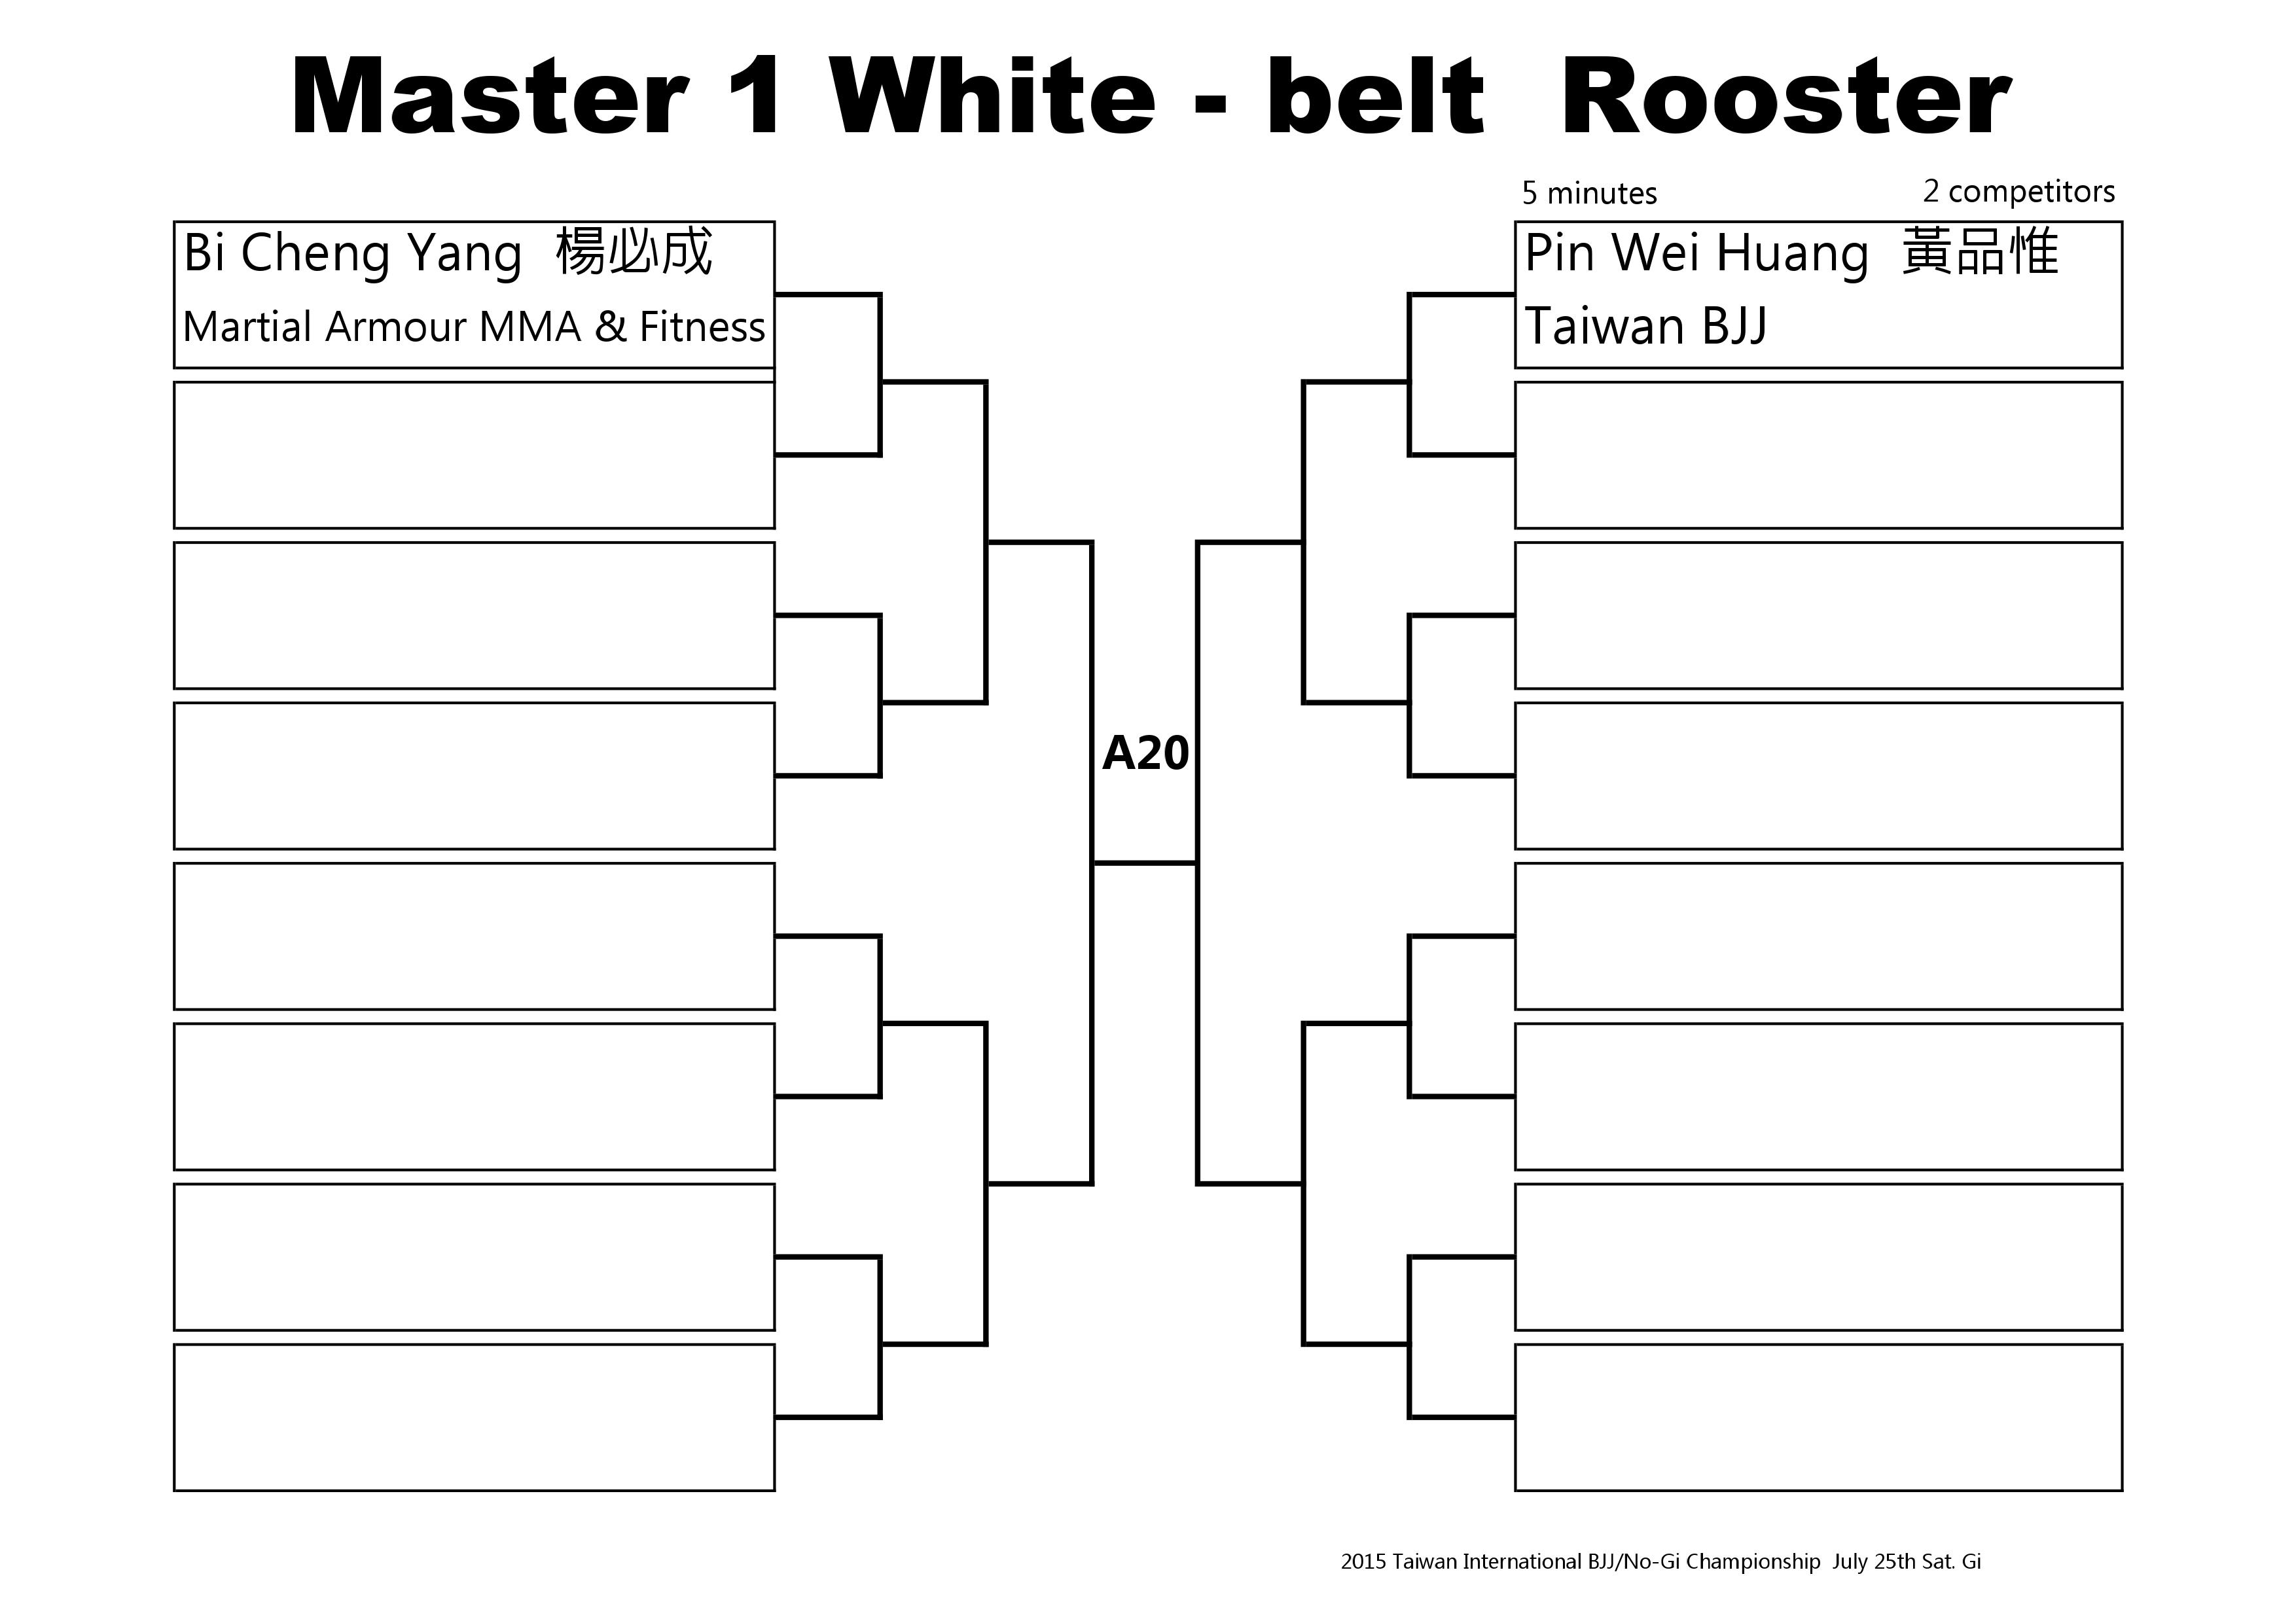 Bracket 1 White Master 2015-0004